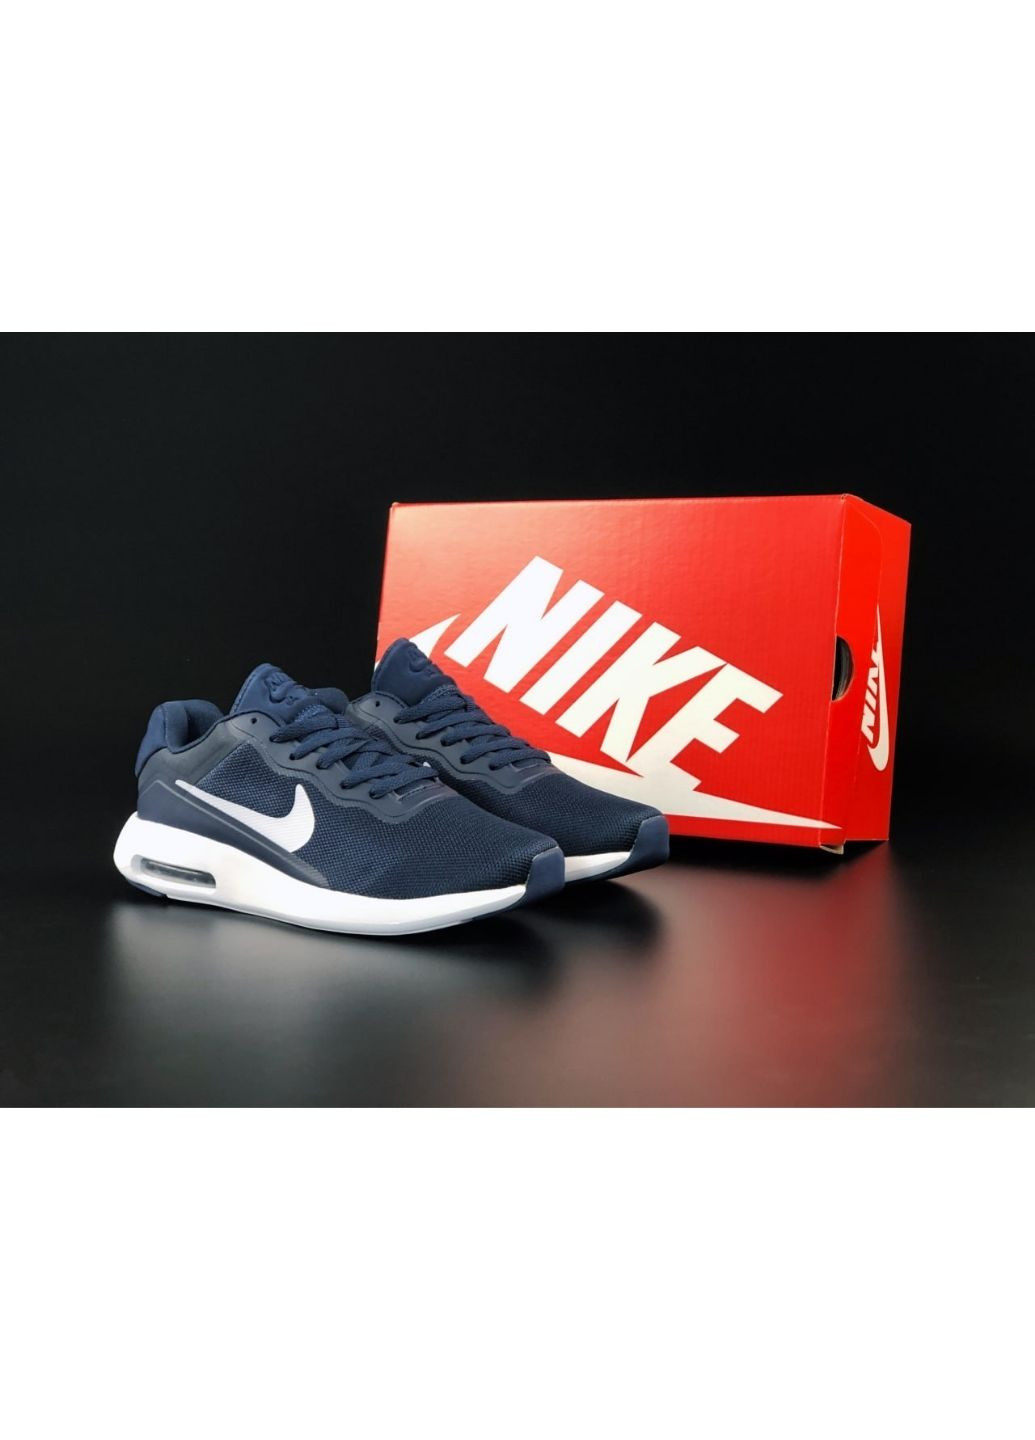 Синие демисезонные мужские кроссовки темно синие «no name» Nike